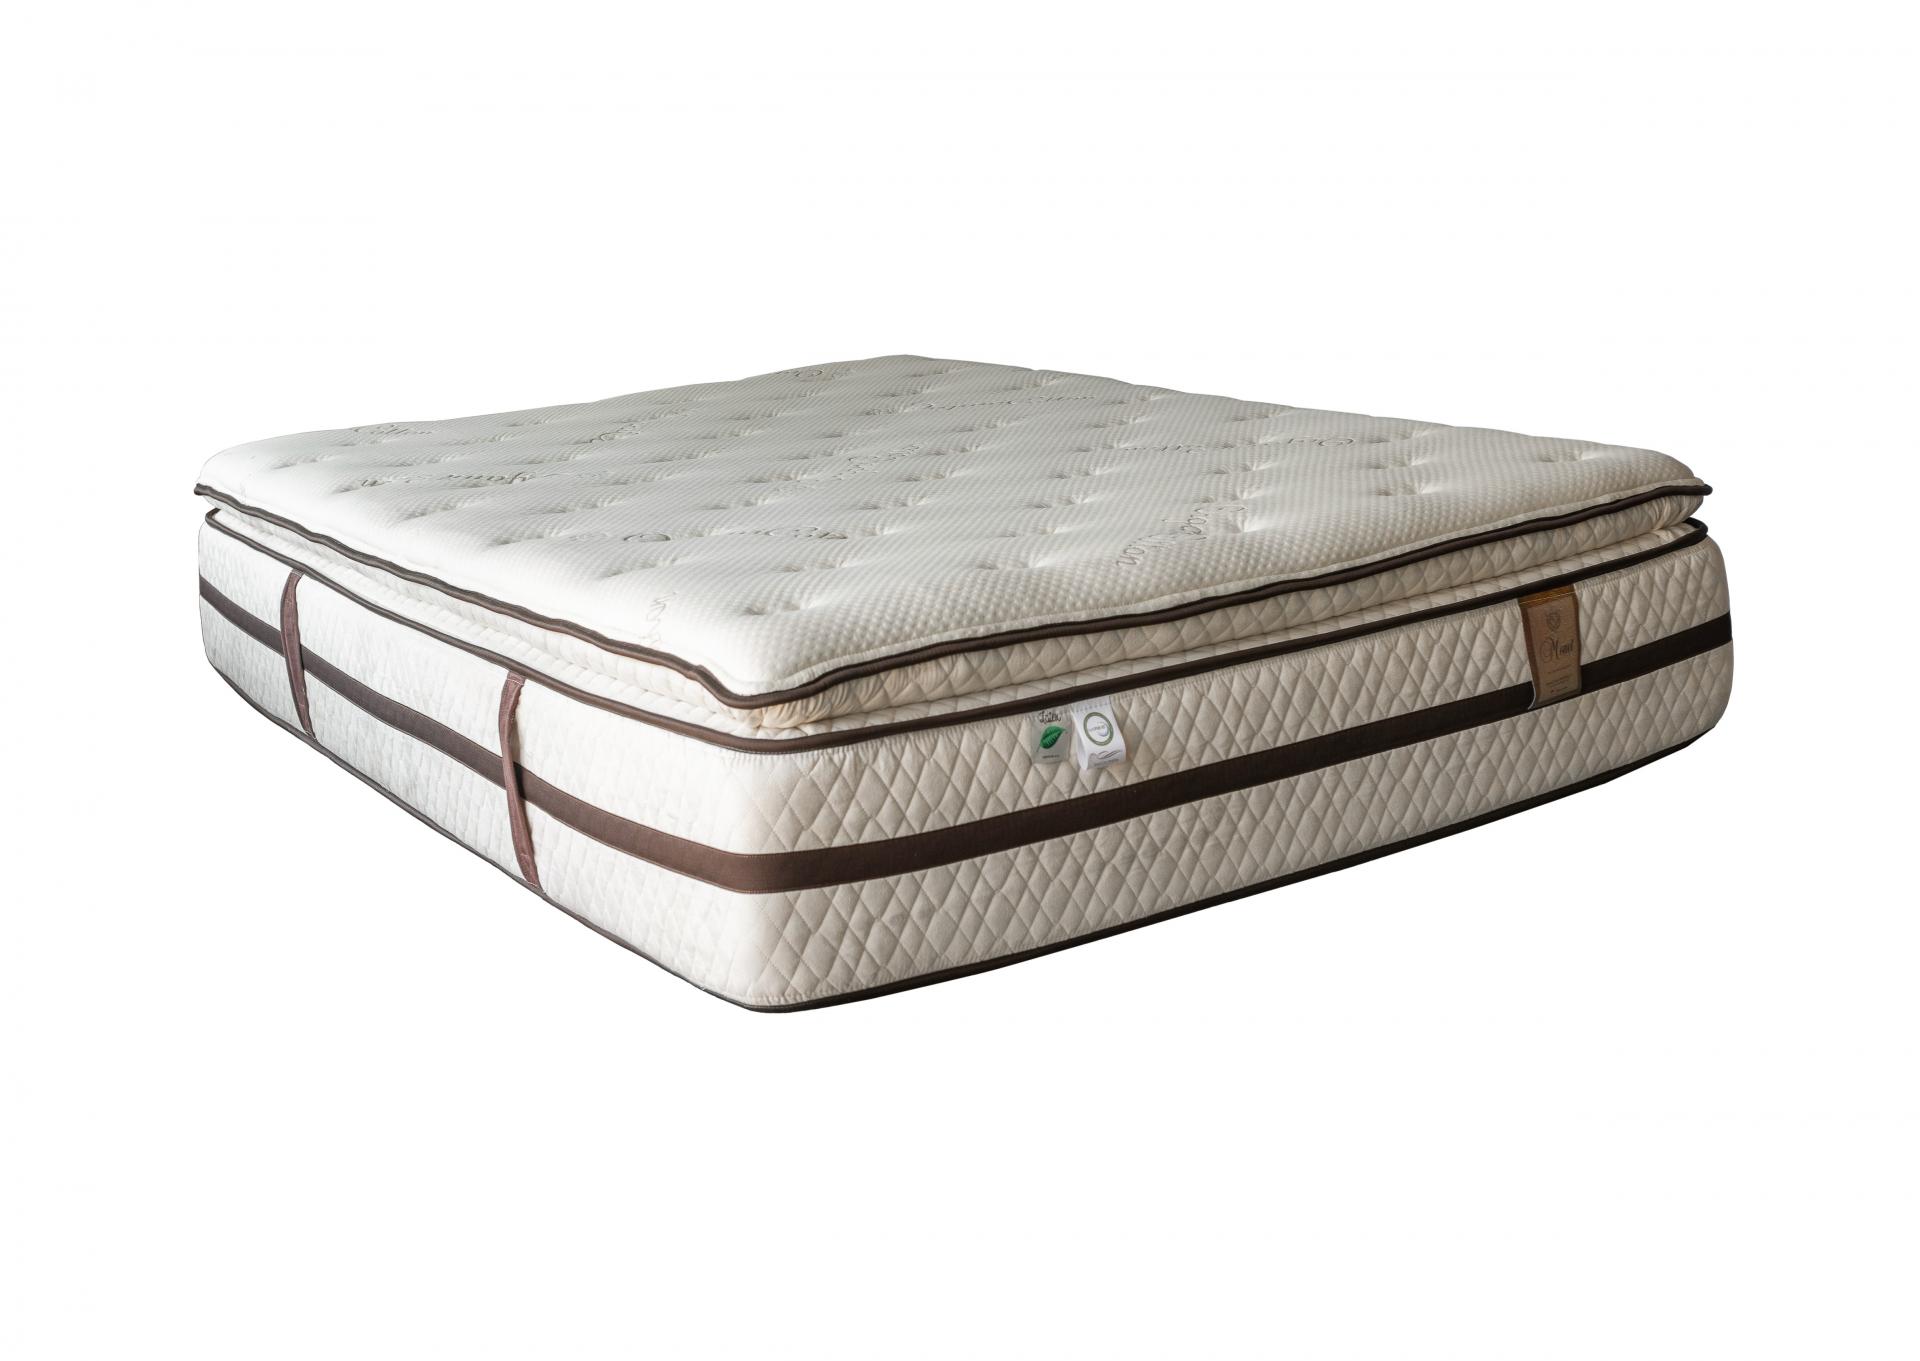 Monet Pillow Top King,Bed Post Mattresses 